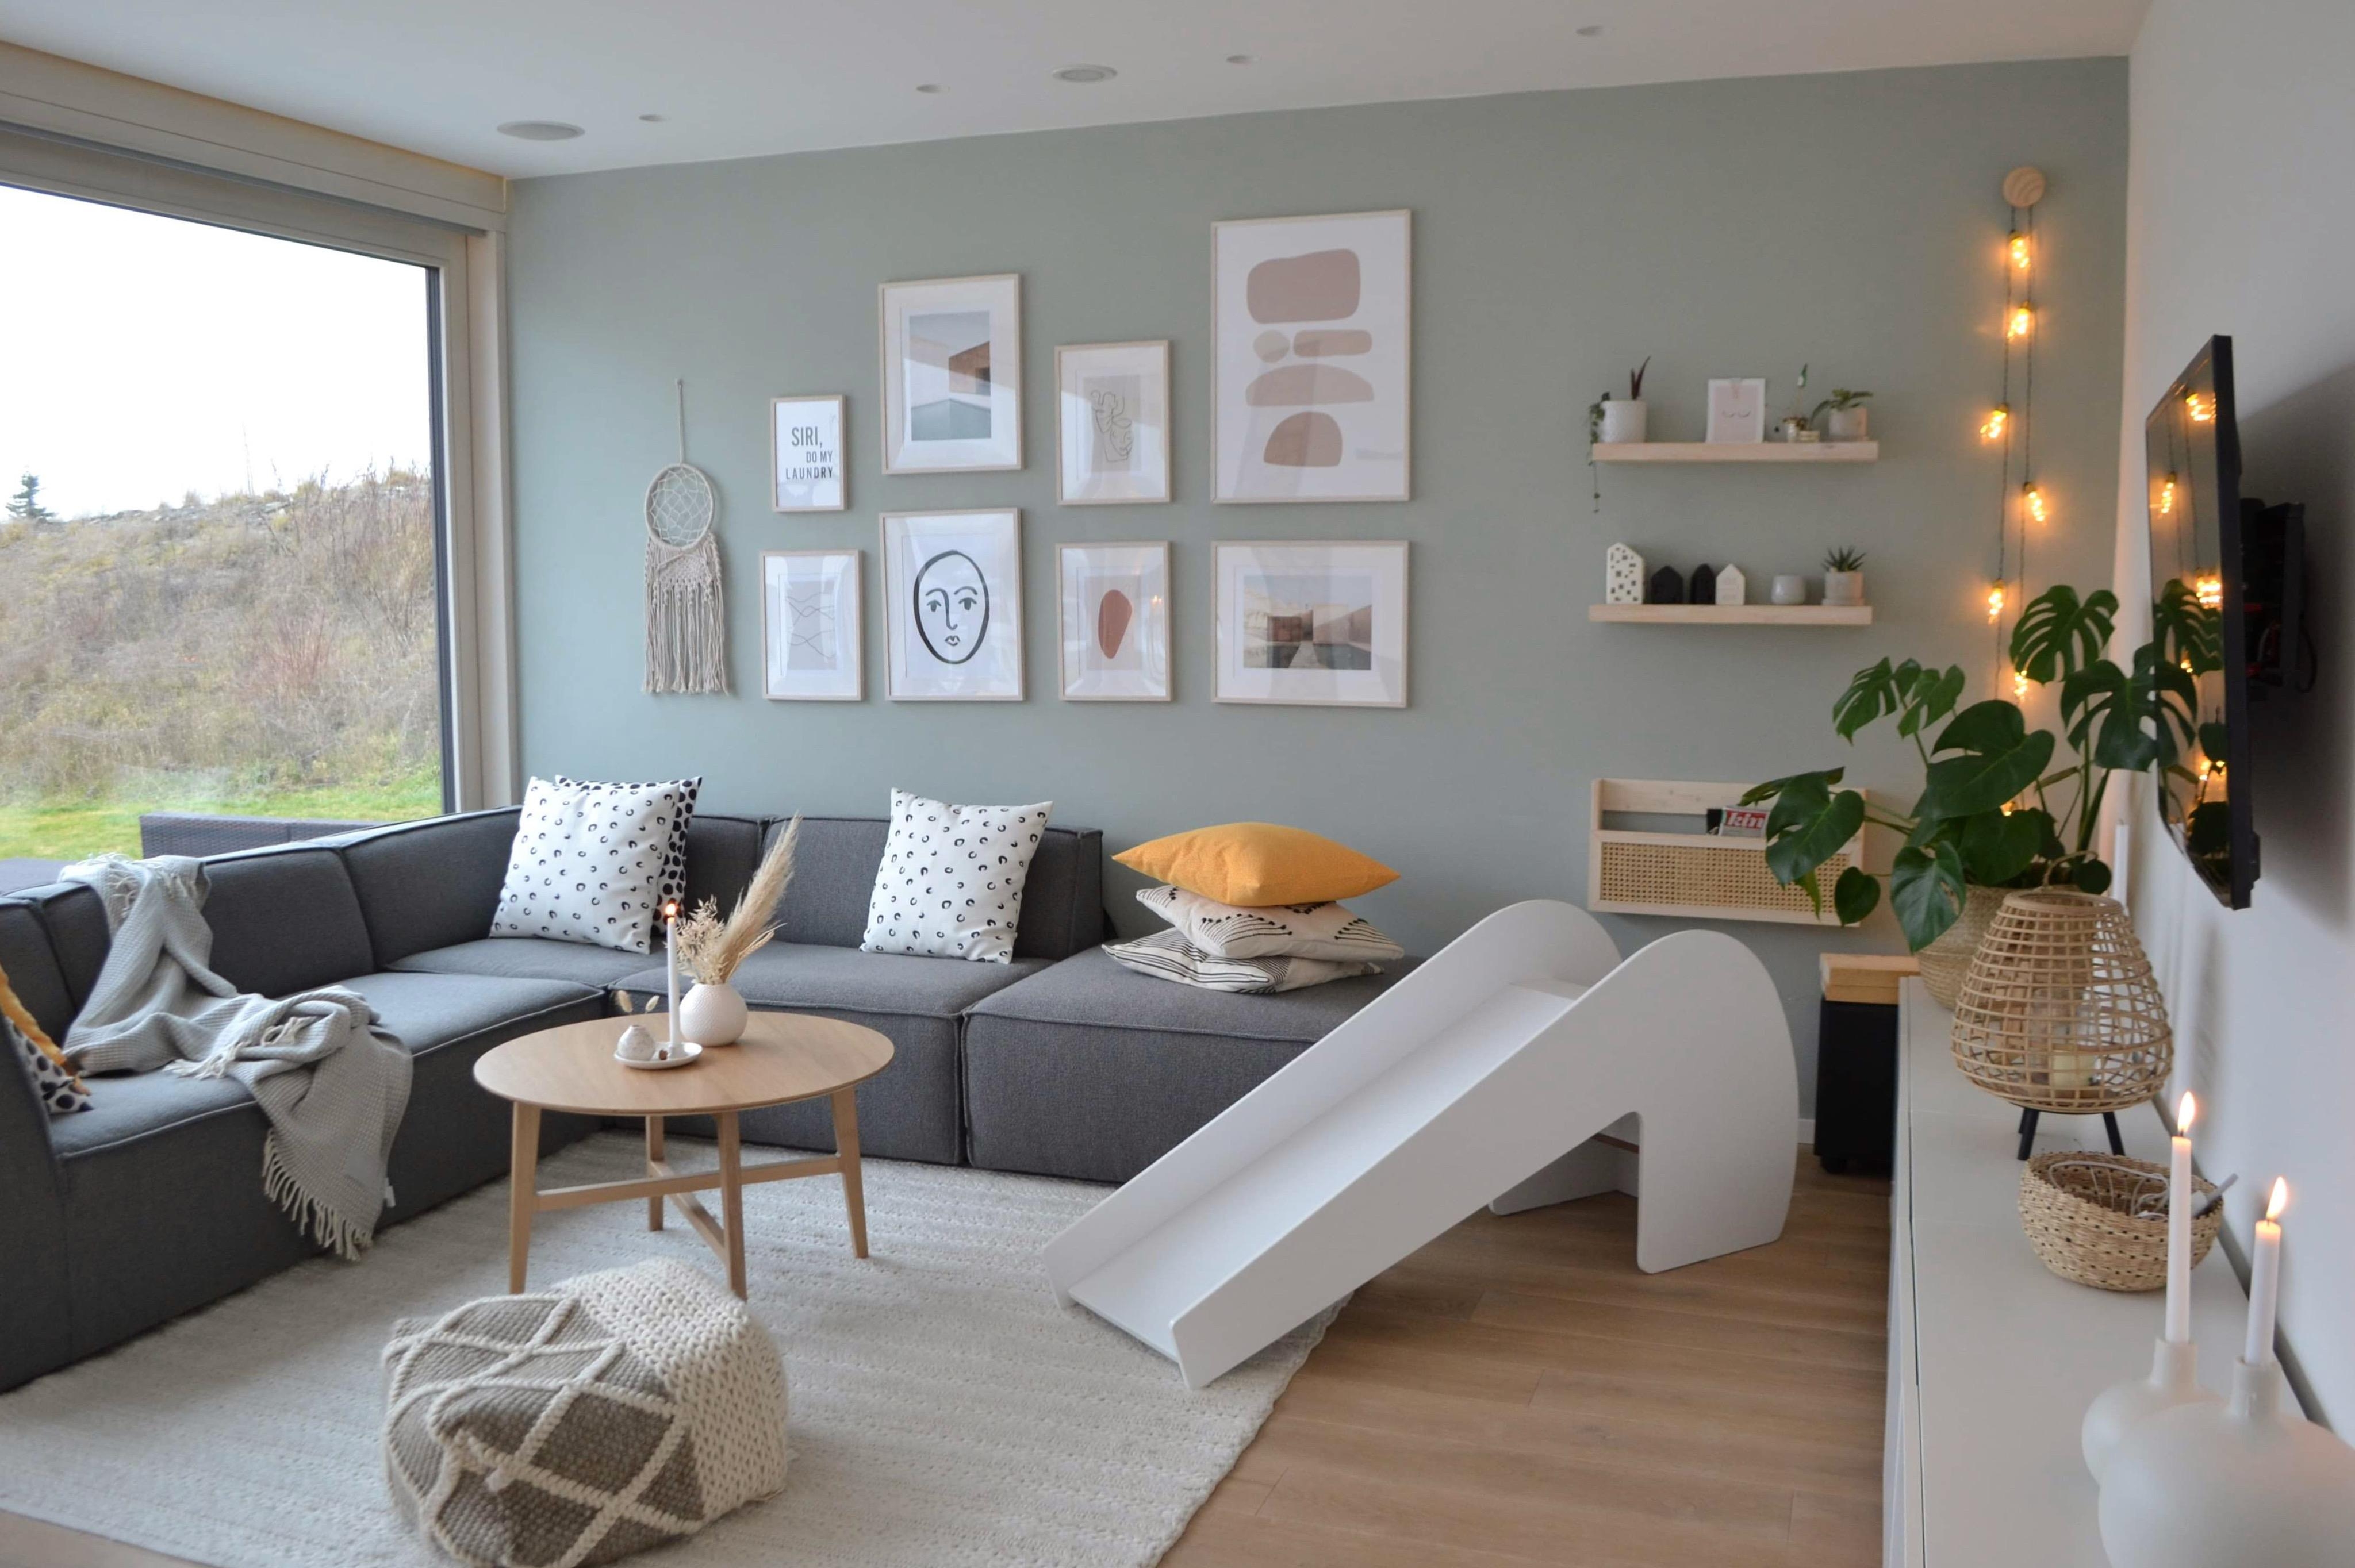 Skandinavisch gemütlich...
#livingroom #wohntimmer #couch #bildergalerie